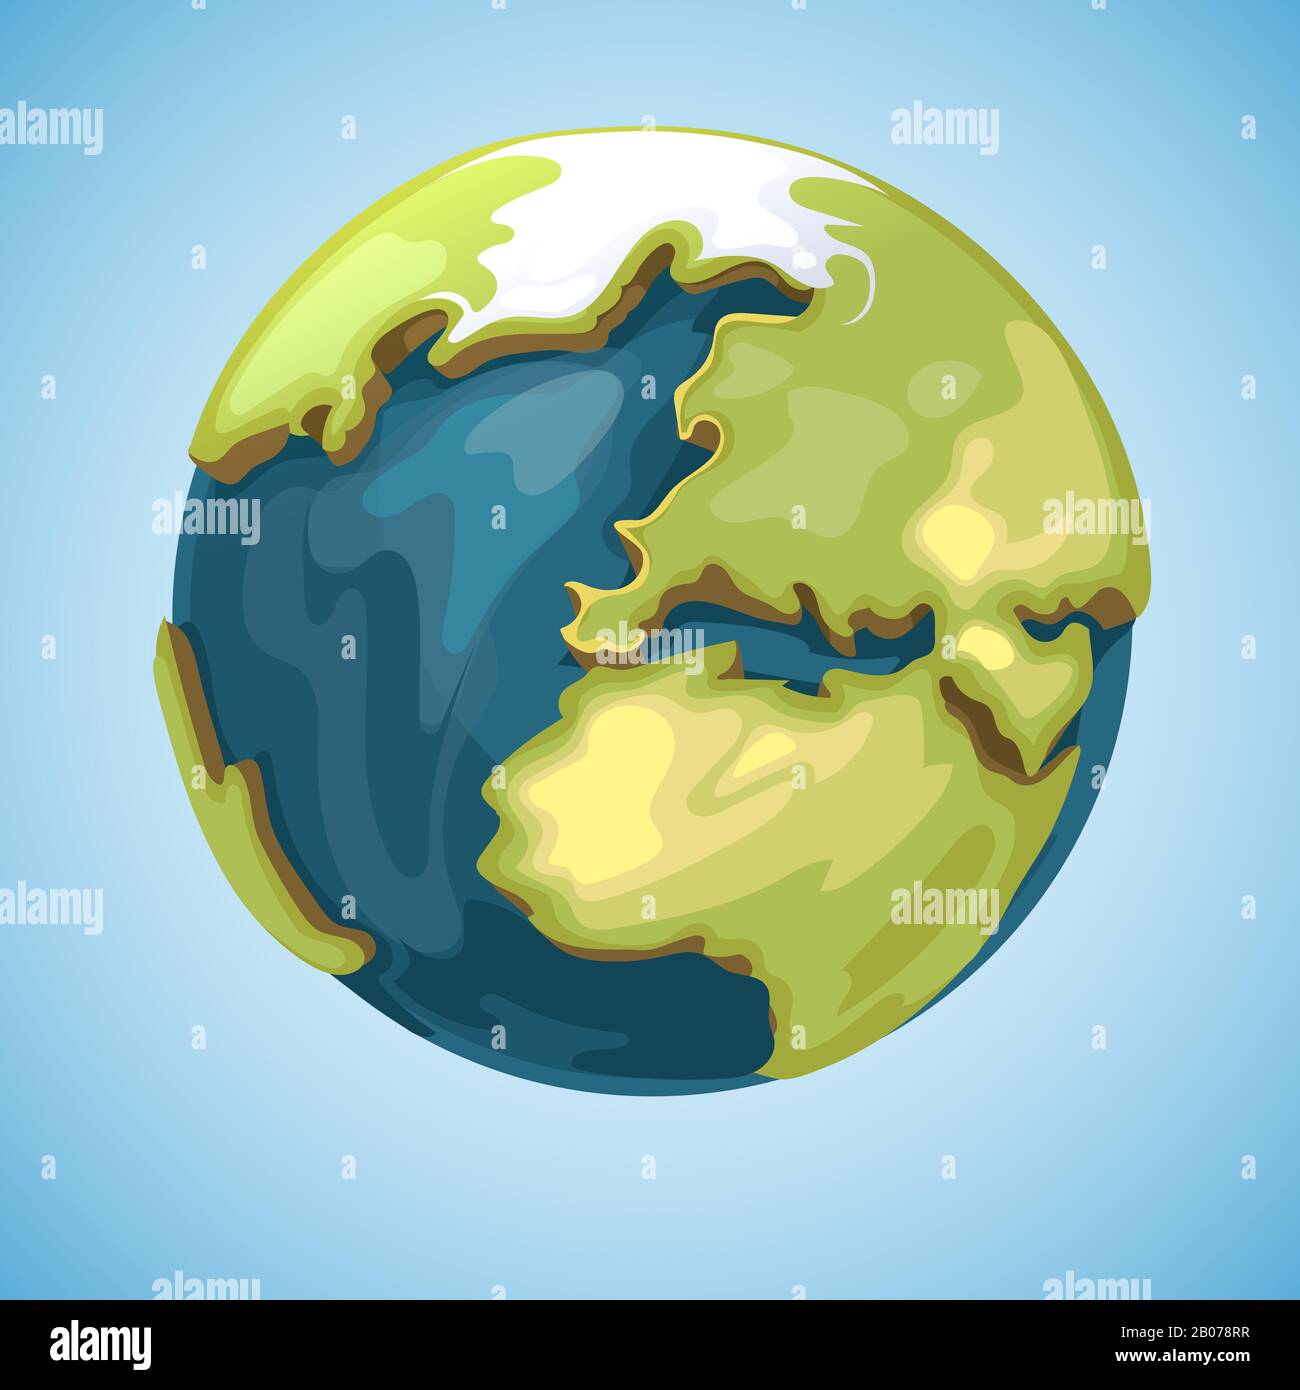 Dessin animé terre planète globe illustration vectorielle dans le style de dessin animé. Voyage géographique de la carte globale Illustration de Vecteur